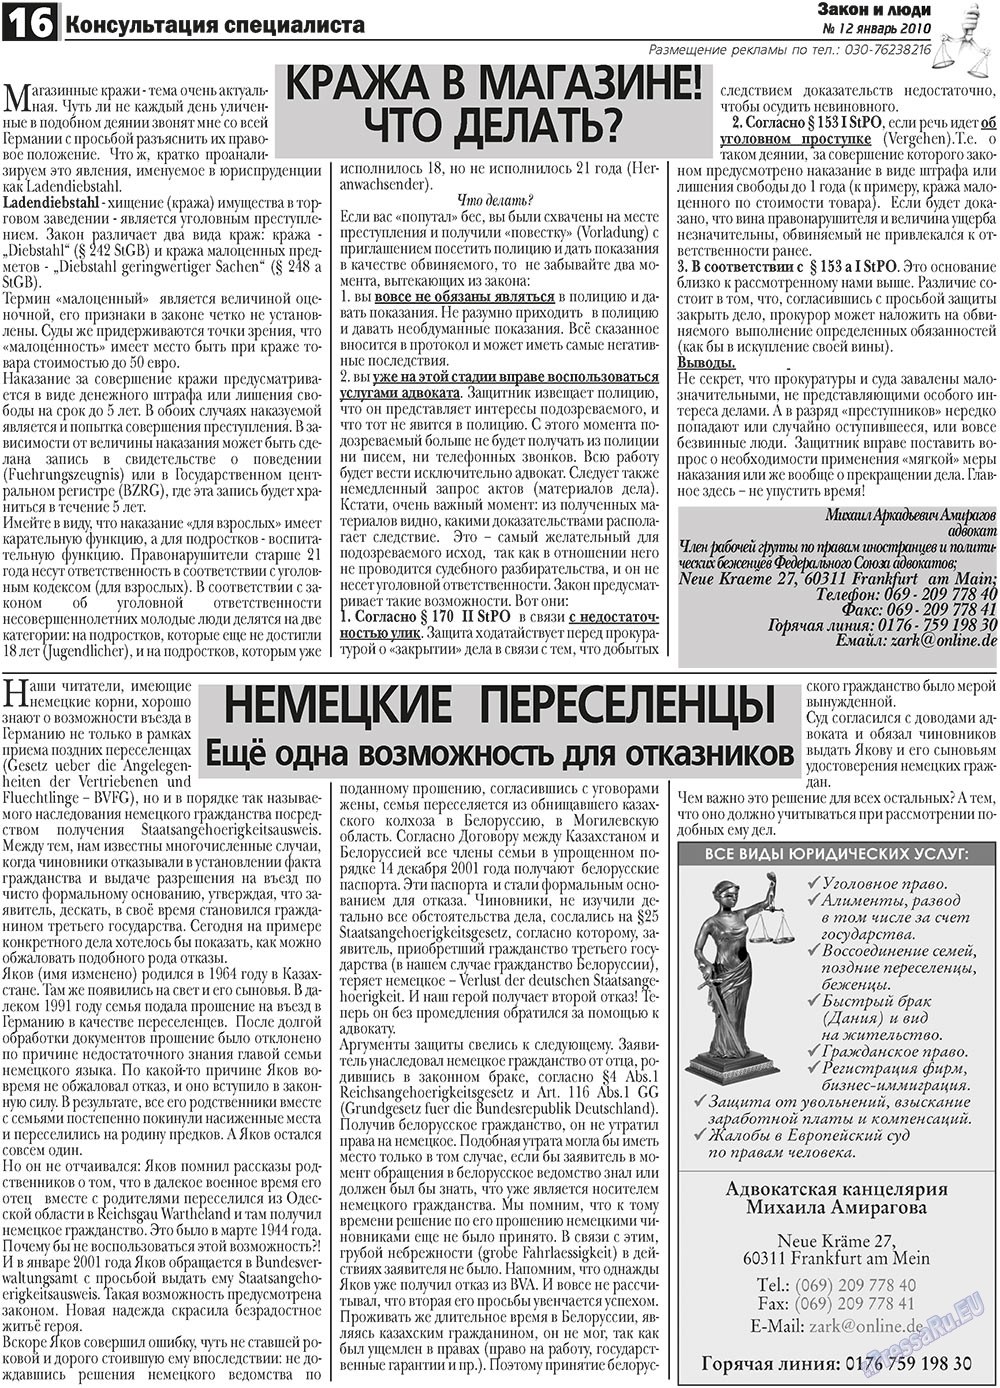 Закон и люди, газета. 2011 №1 стр.16